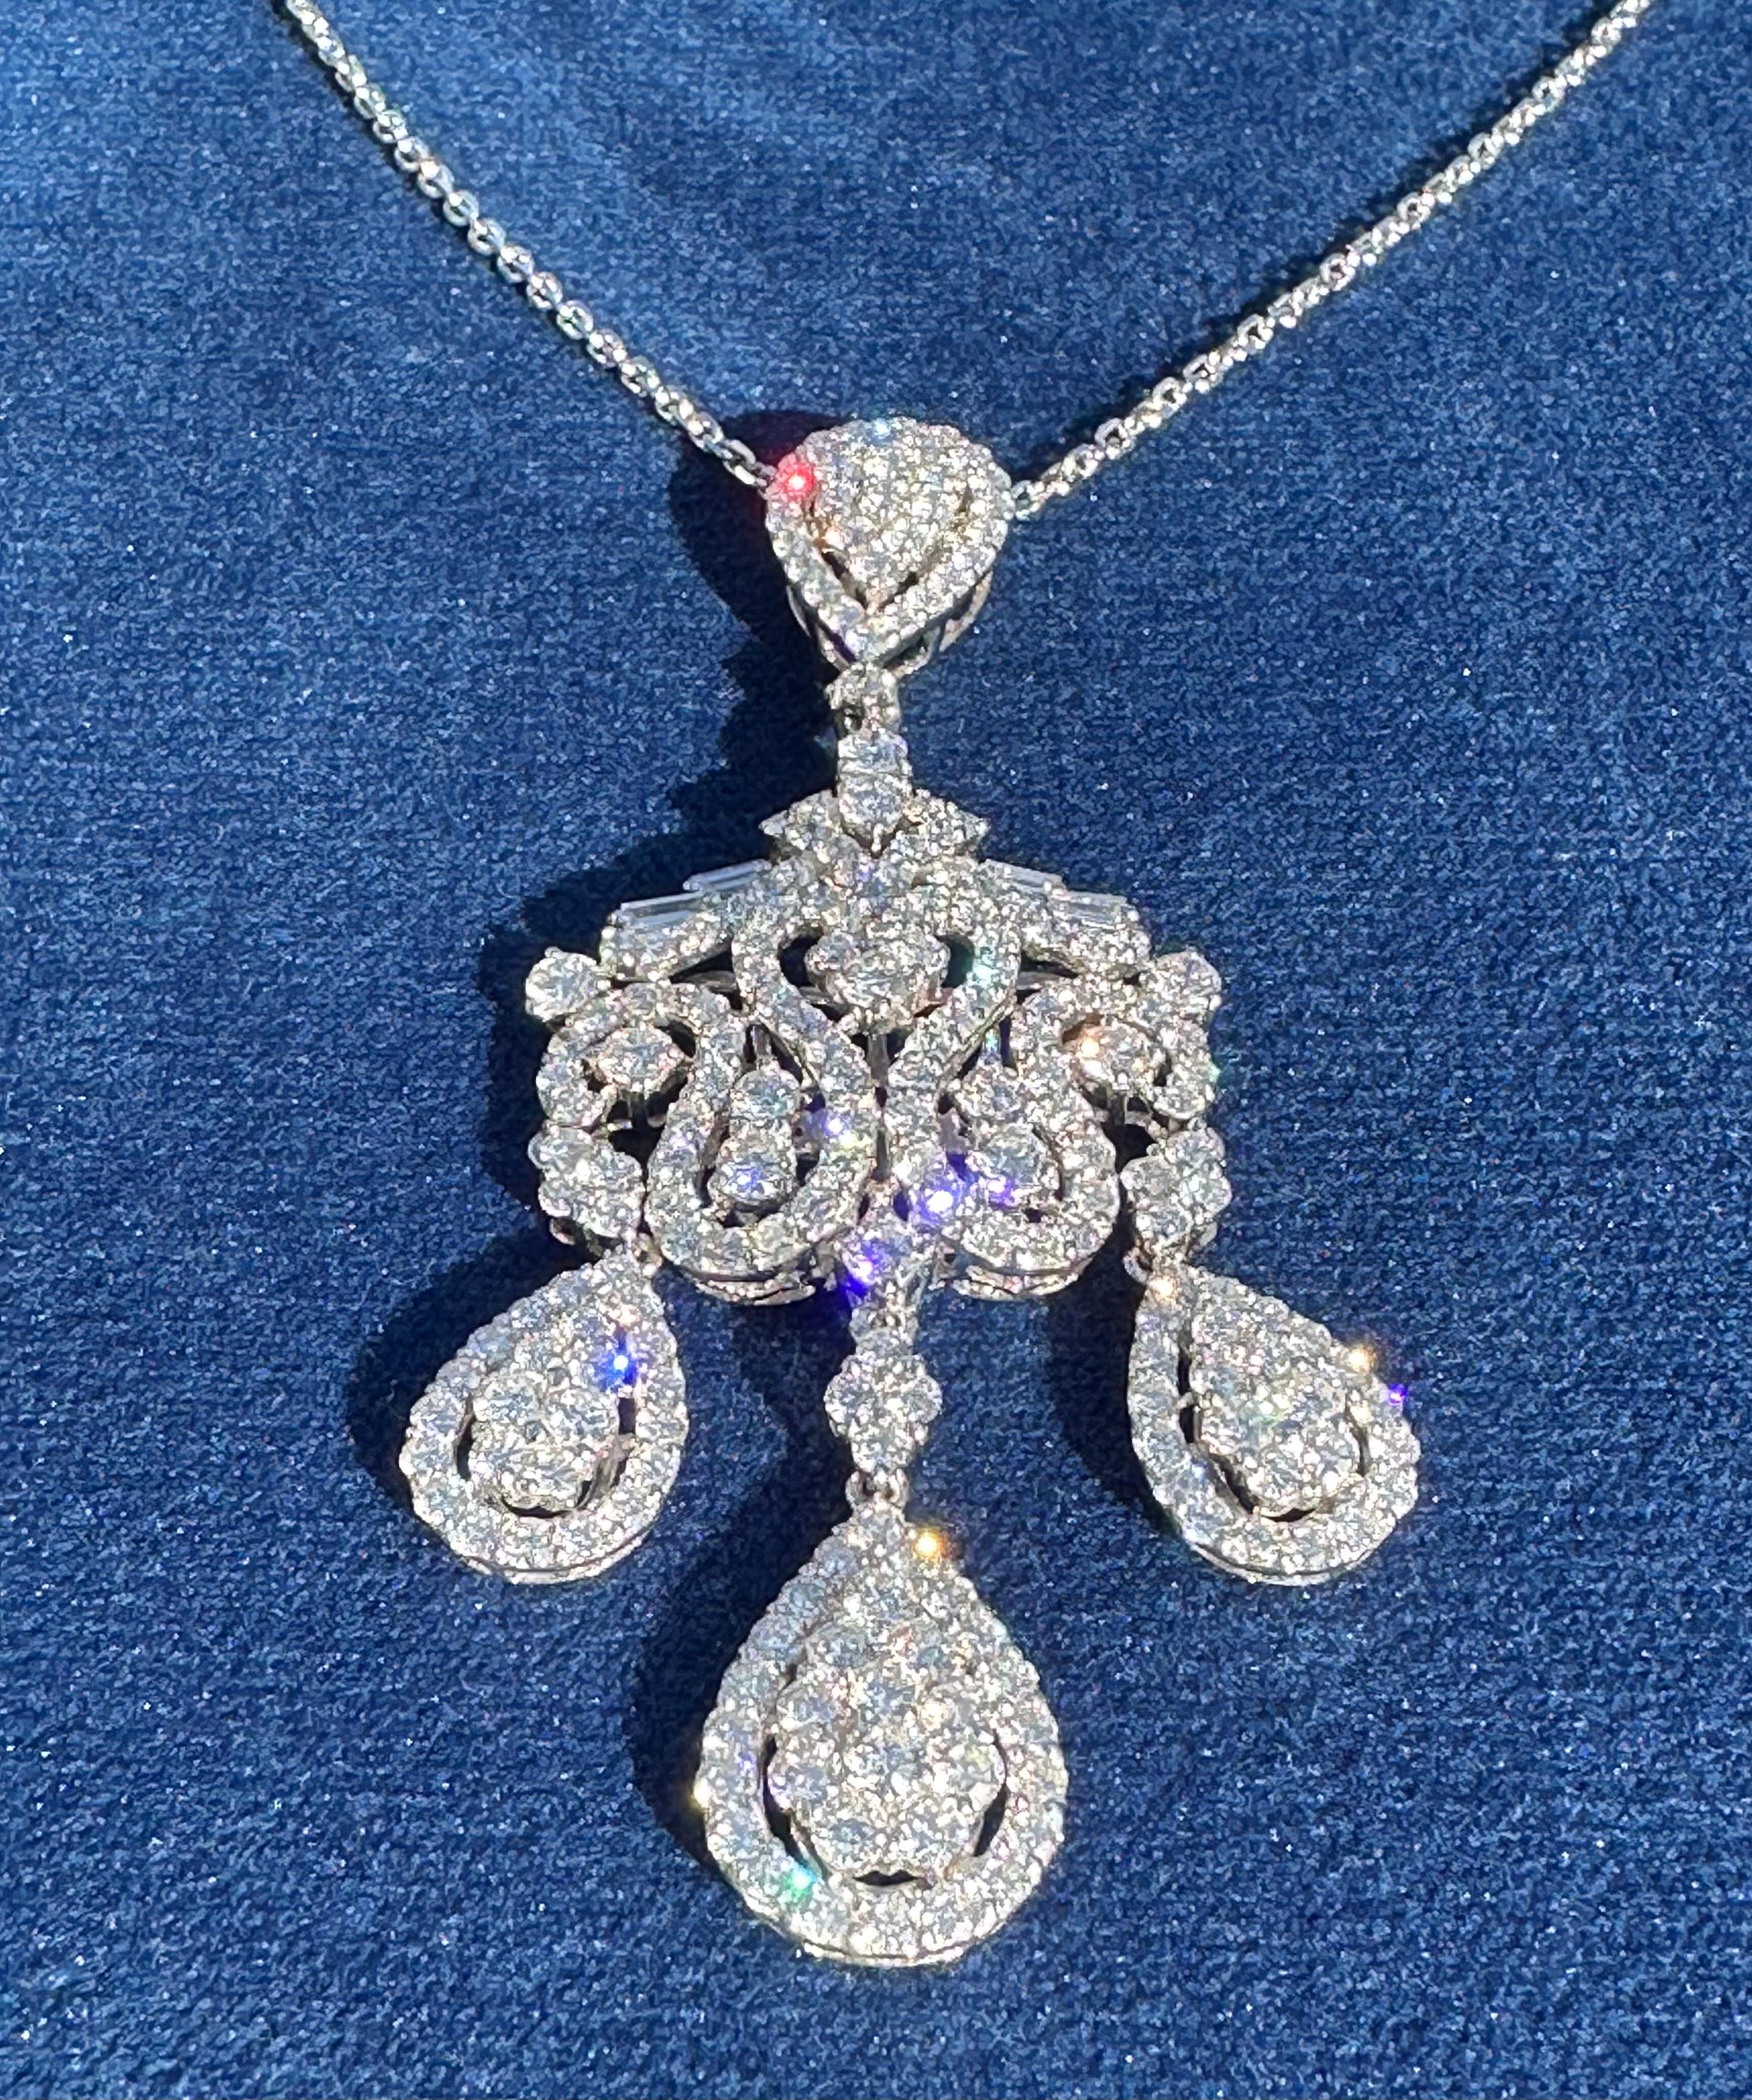 Exquisite 18 Karat White Gold 9.76 Carat Diamond Chandelier Pendant Necklace  For Sale 2